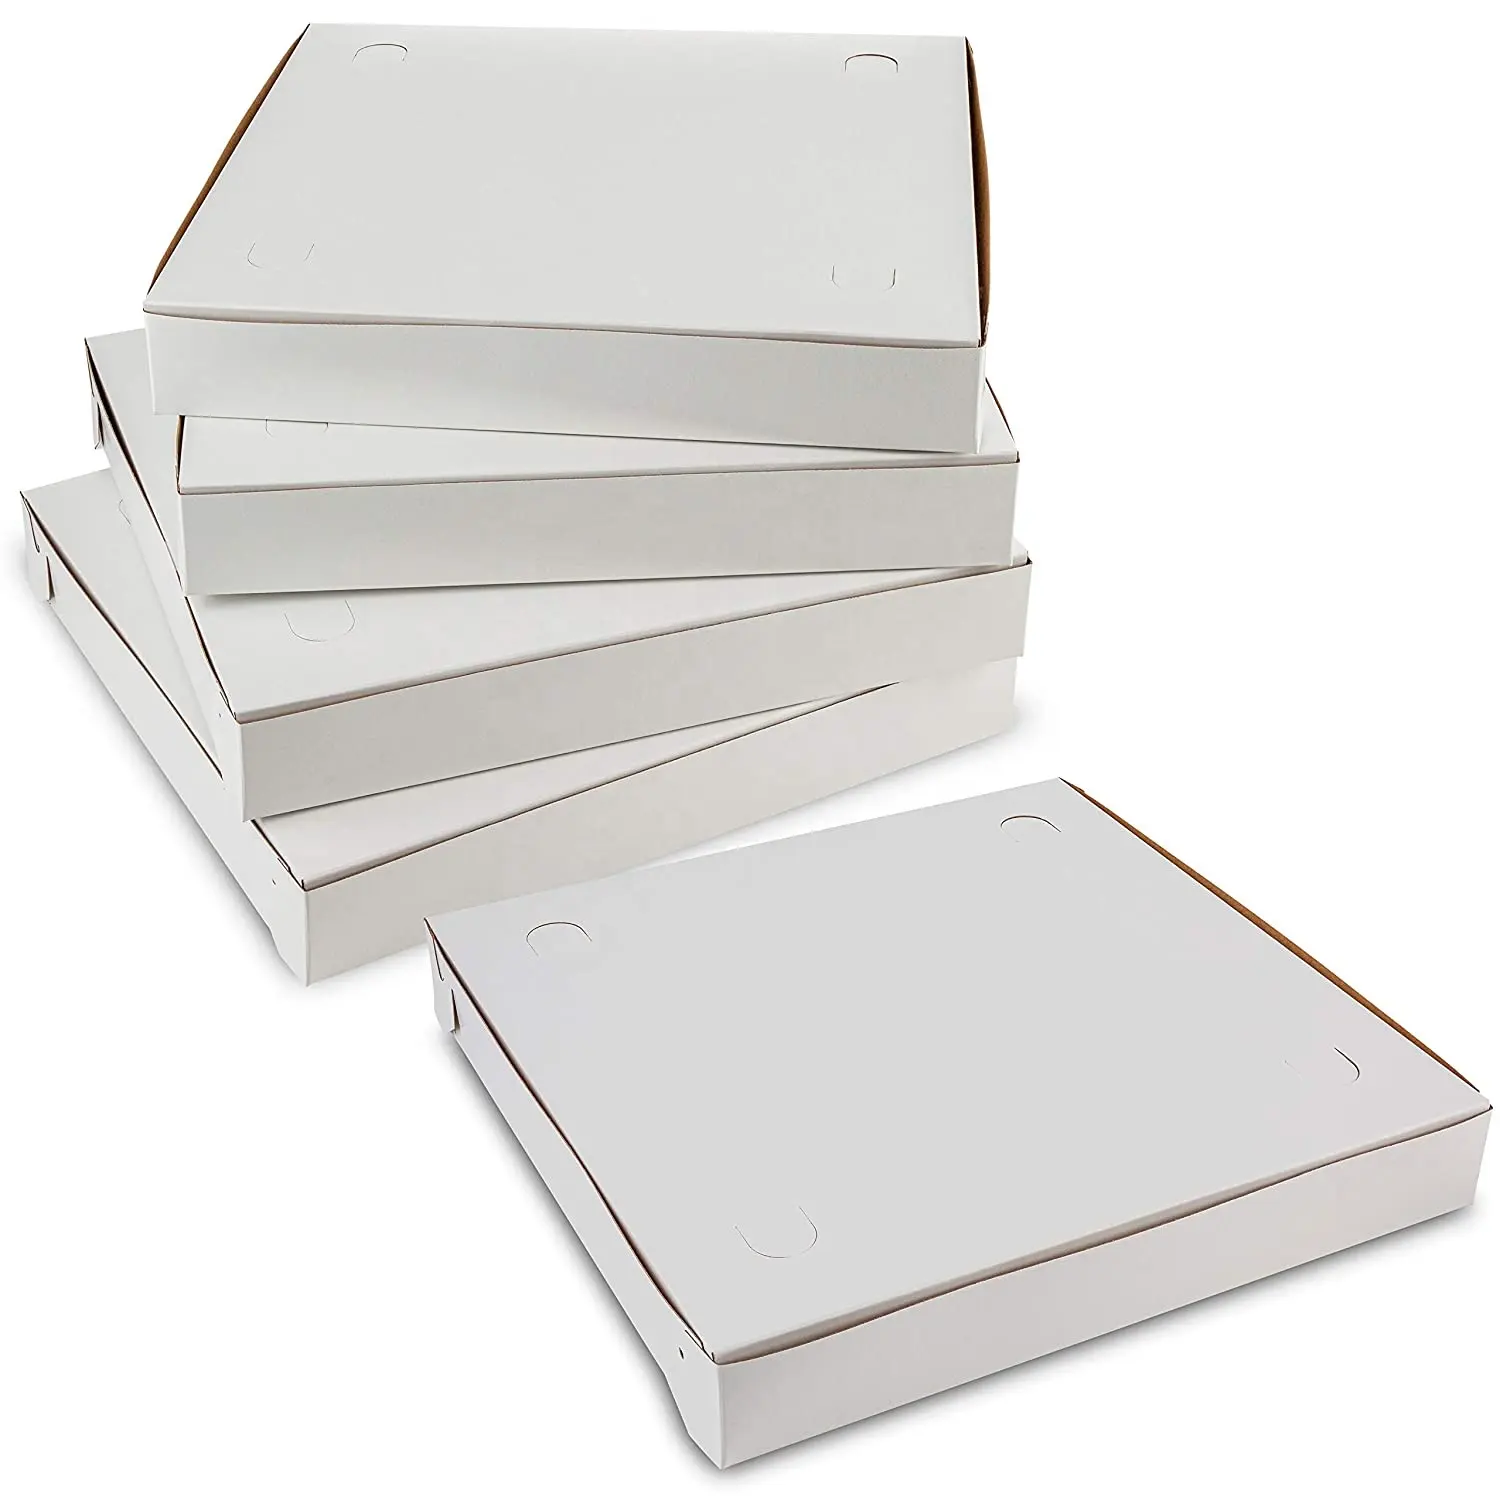 Kilit köşe kil kaplı ince beyaz Pizza kutusu yeniden kullanılabilir Pizza karton özel baskılı oluklu kağıt ambalaj ucuz Pizza kutusu